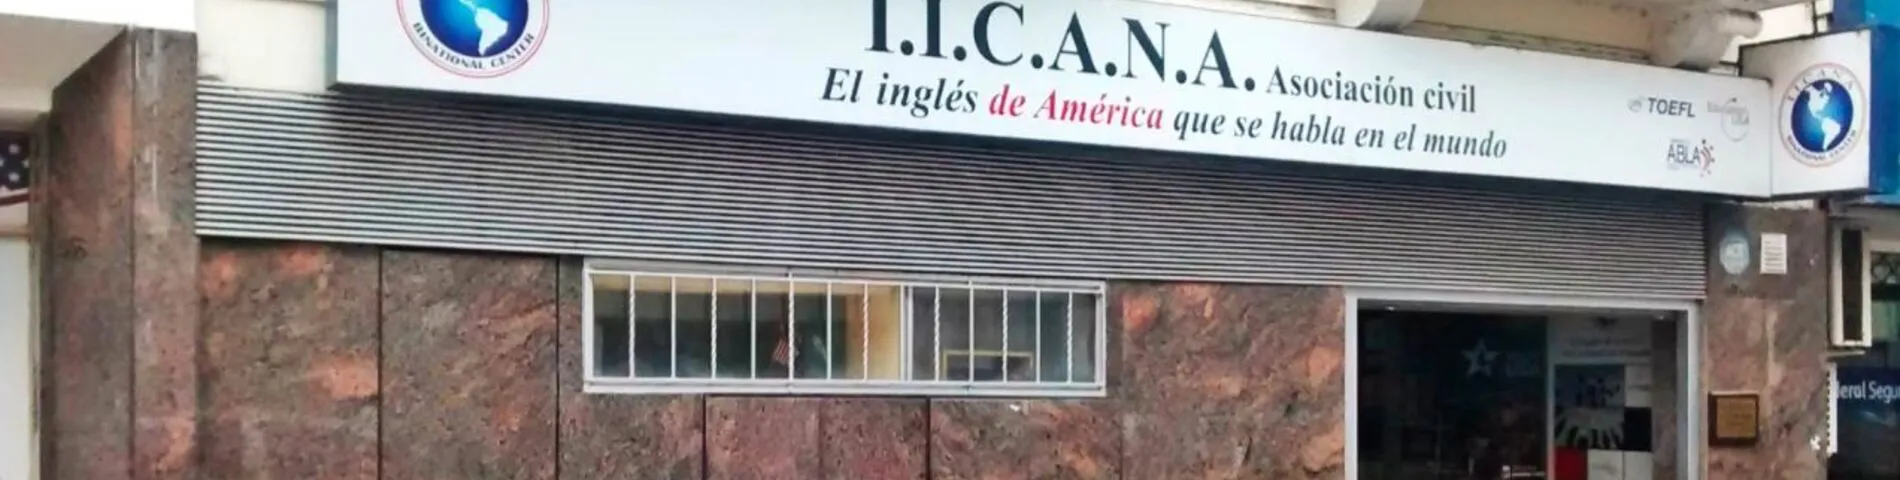 IICANA - Instituto de Intercambio Cultural Argentino Norteamericano画像1